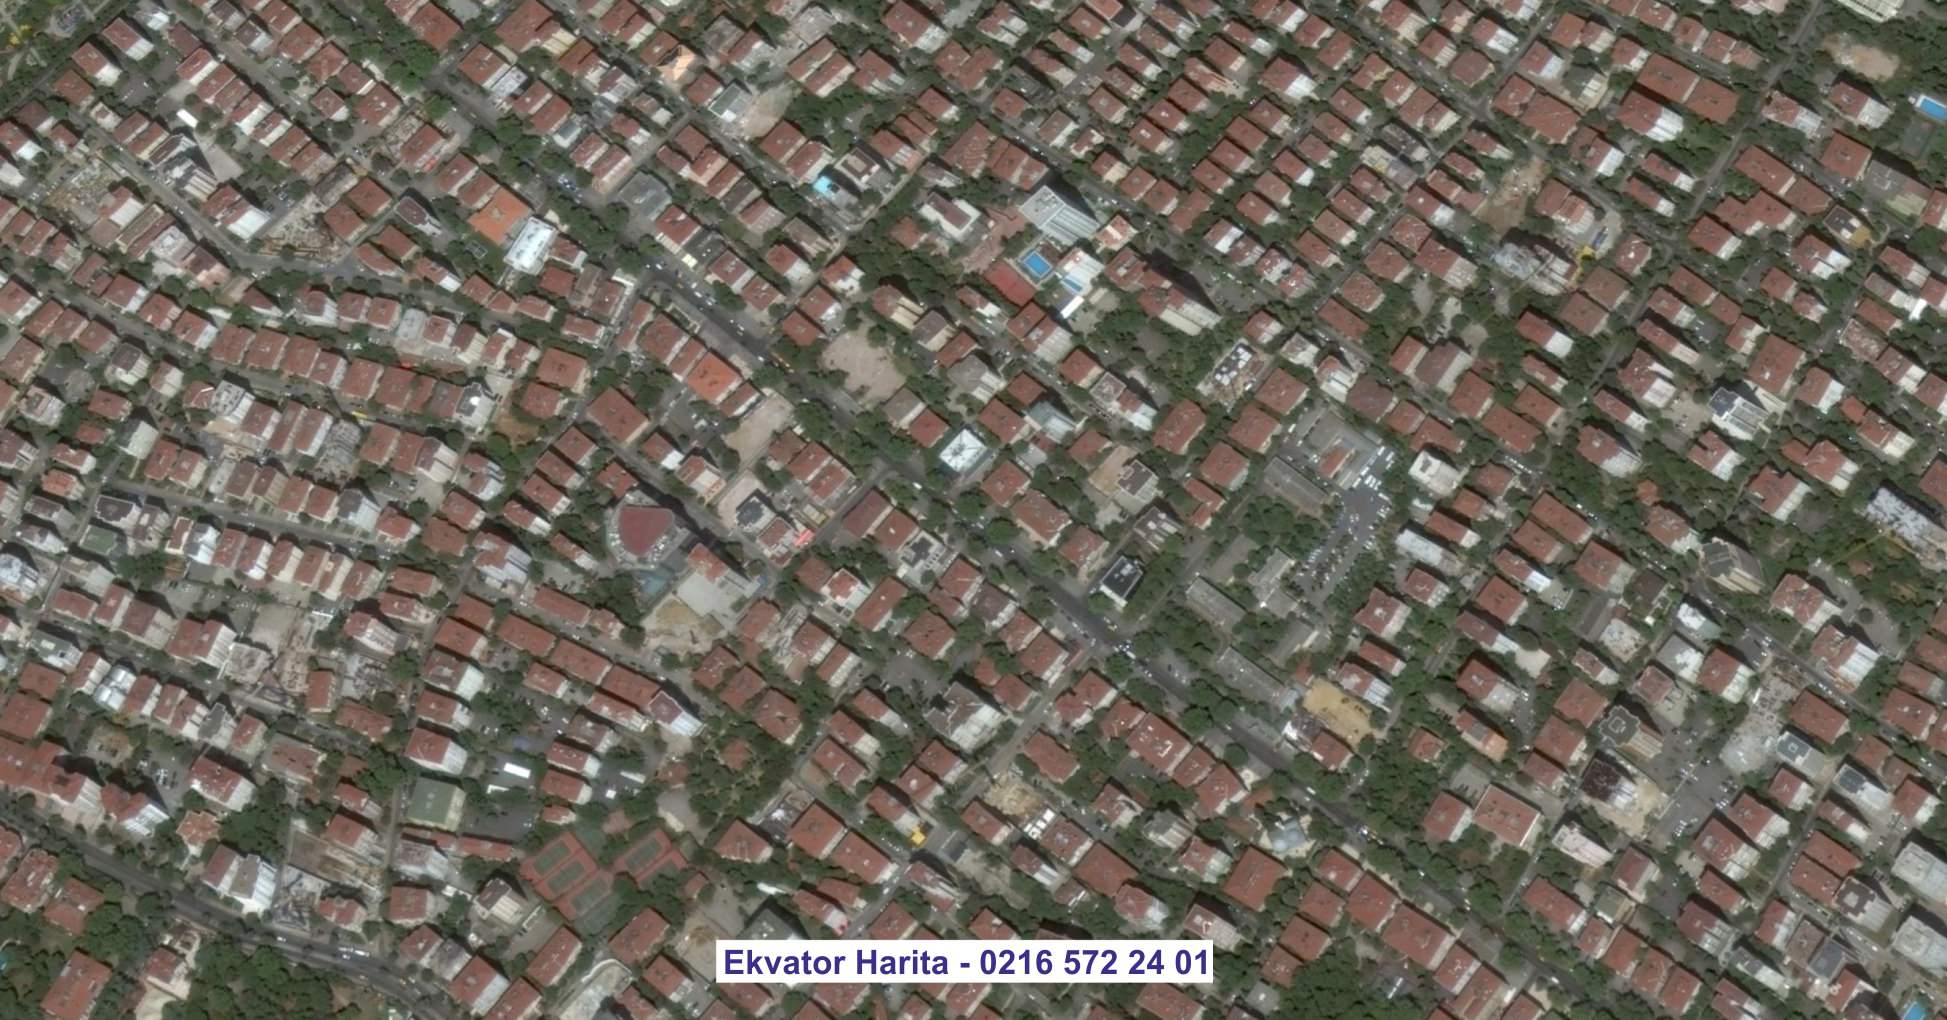 Haseke Uydu Görüntüsü Örnek Fotoğrafı